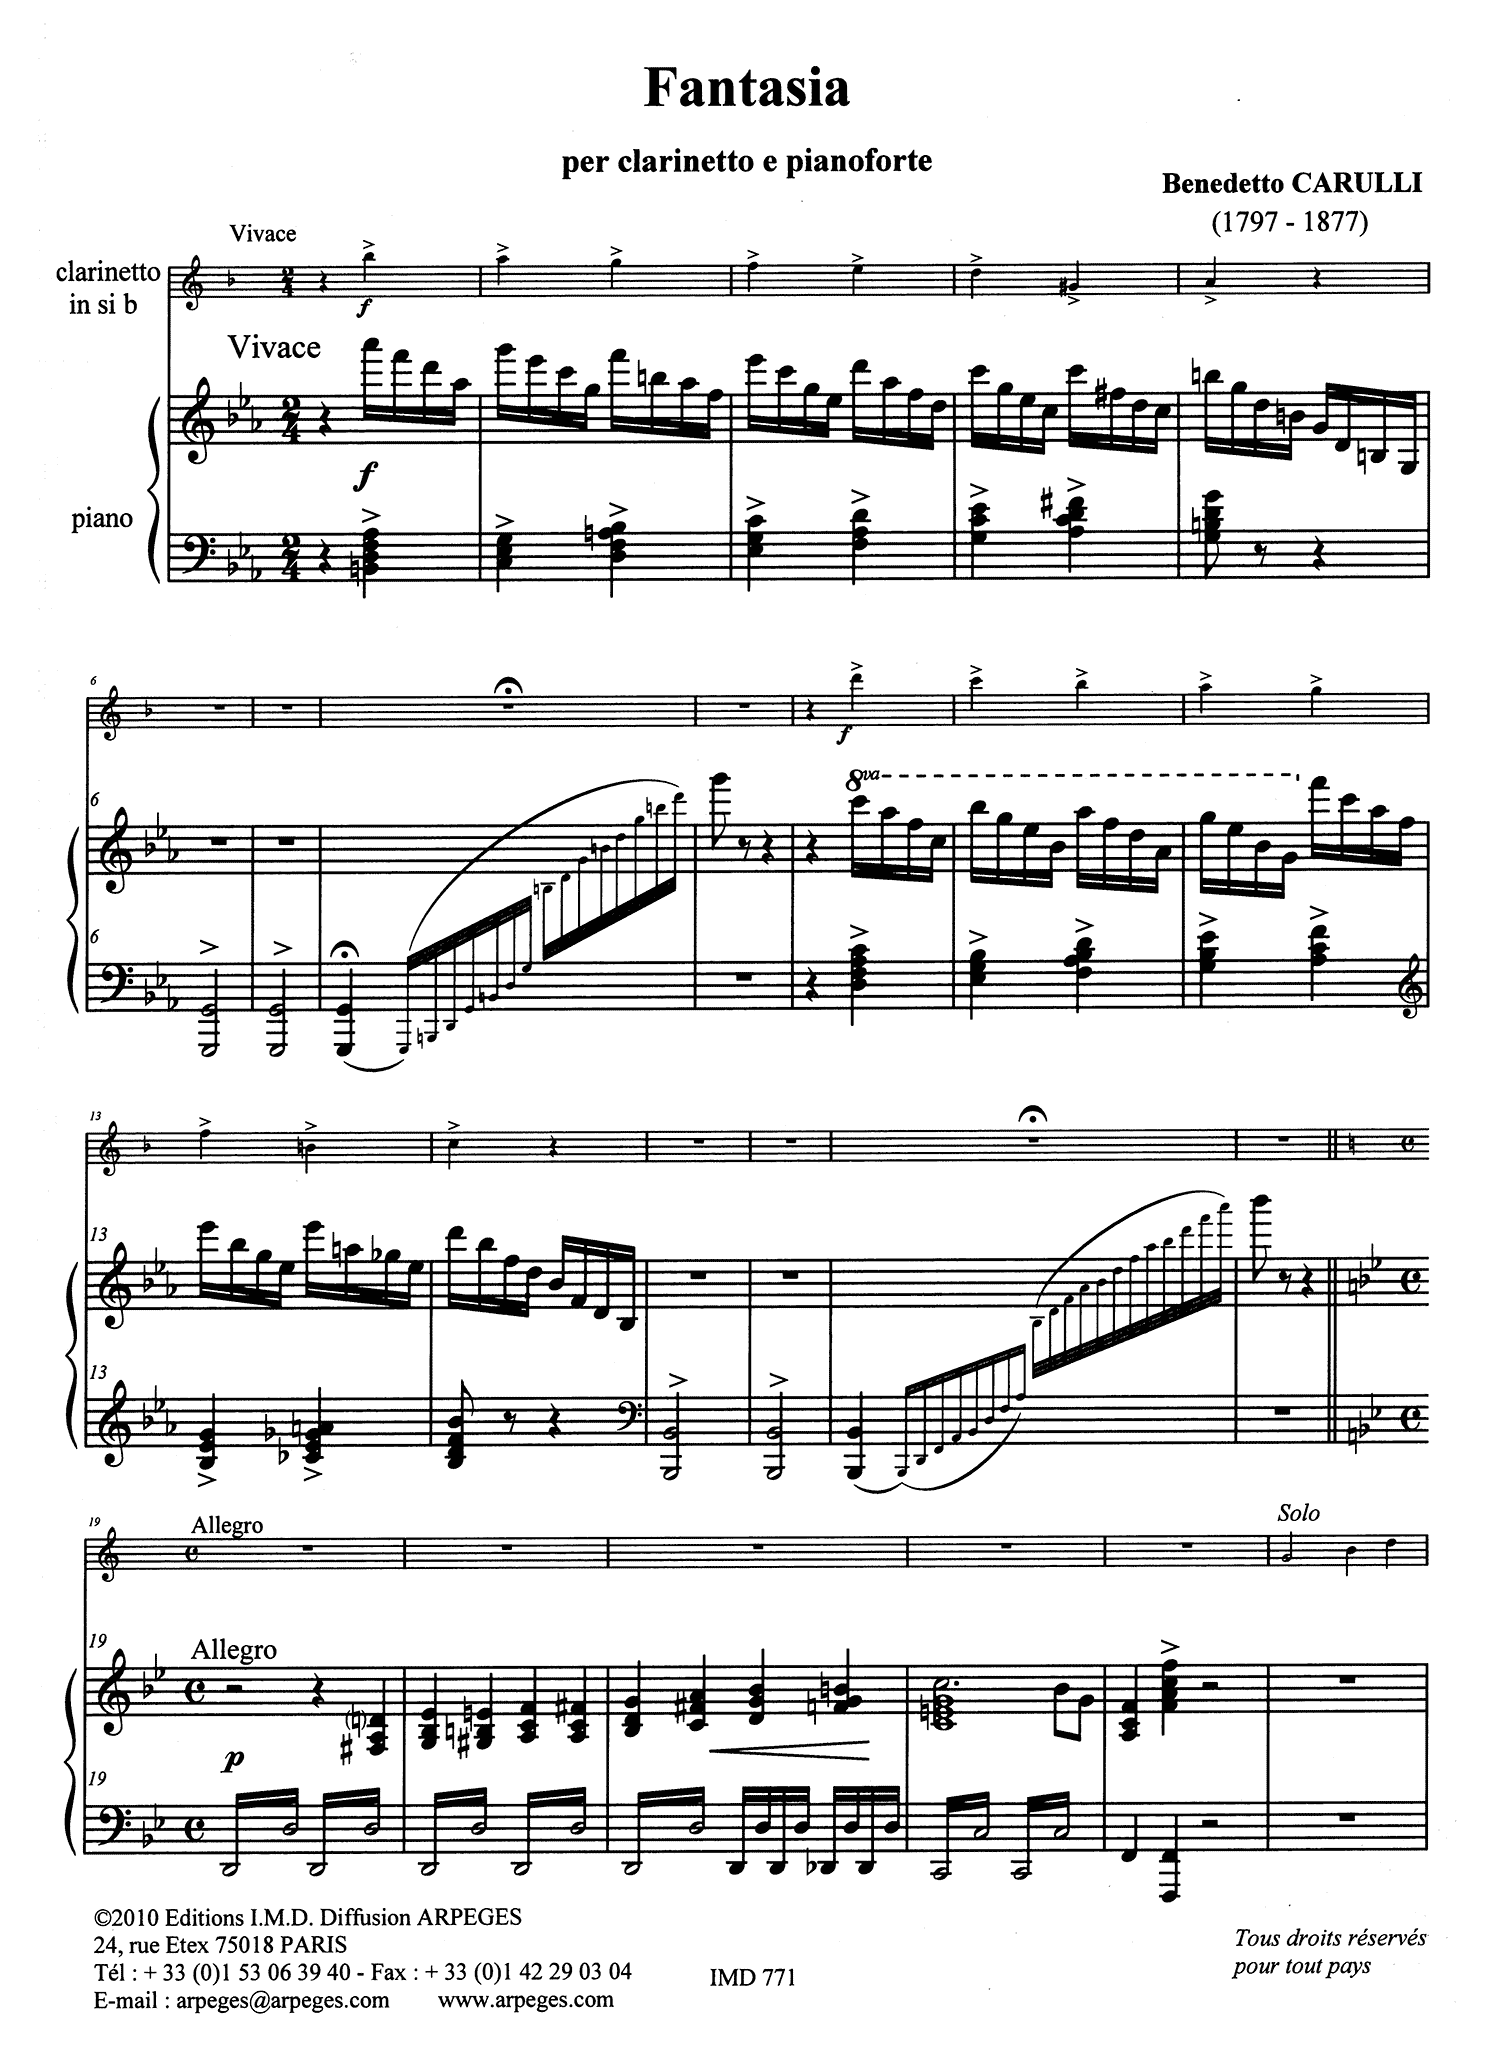 Carulli Fantasia on Verdi opera ‘Macbeth’ clarinet and piano score